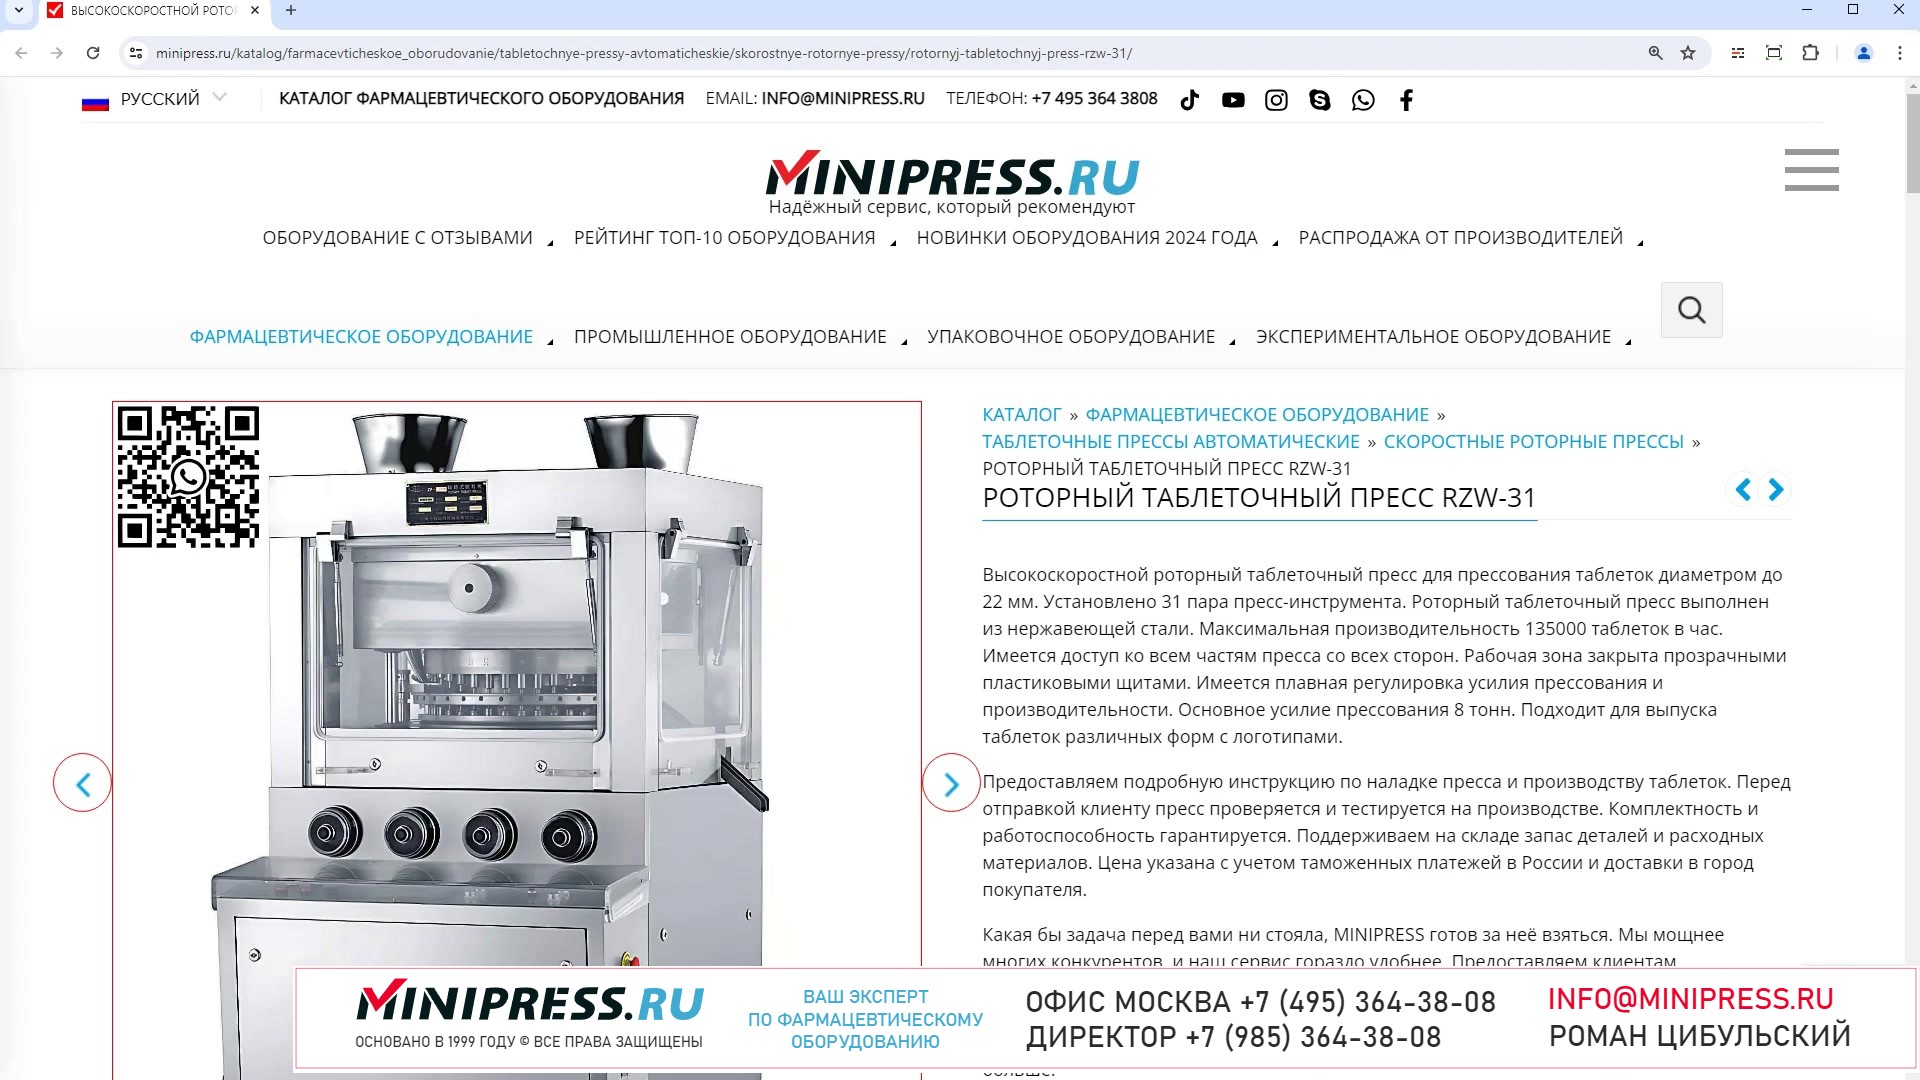 Minipress.ru Роторный таблеточный пресс RZW-31